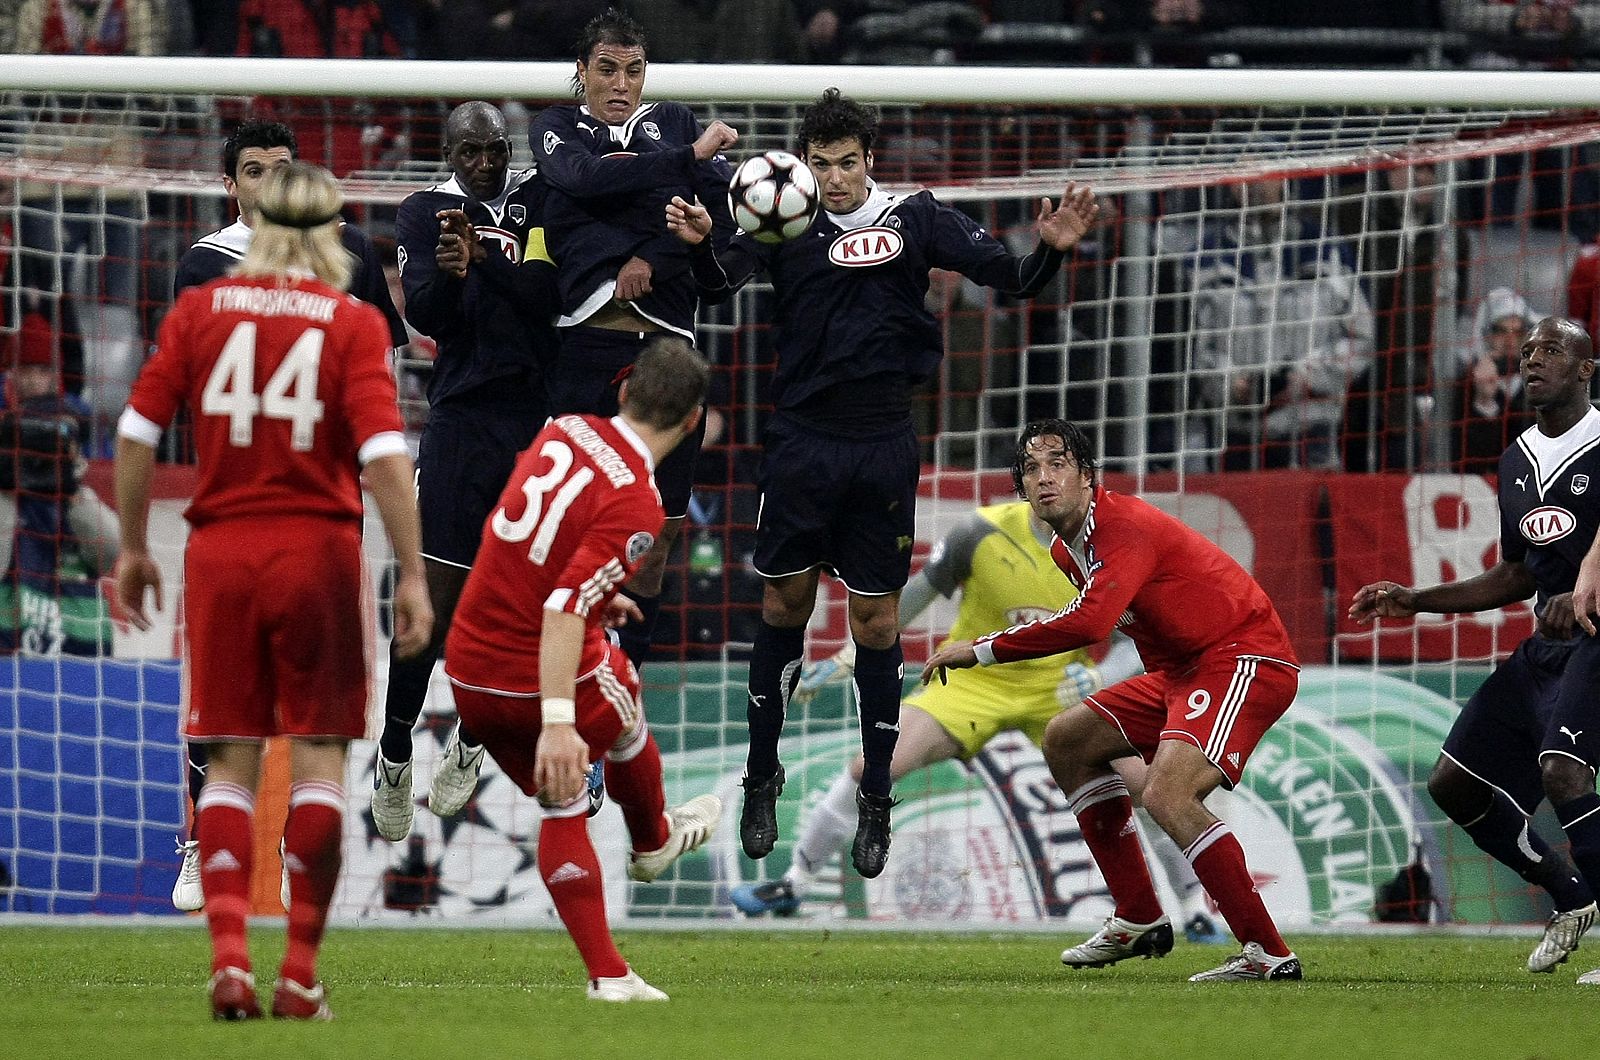 El delantero del Manchester United, Michael Owen (c), anota el primer gol de su equipo contra el CSKA